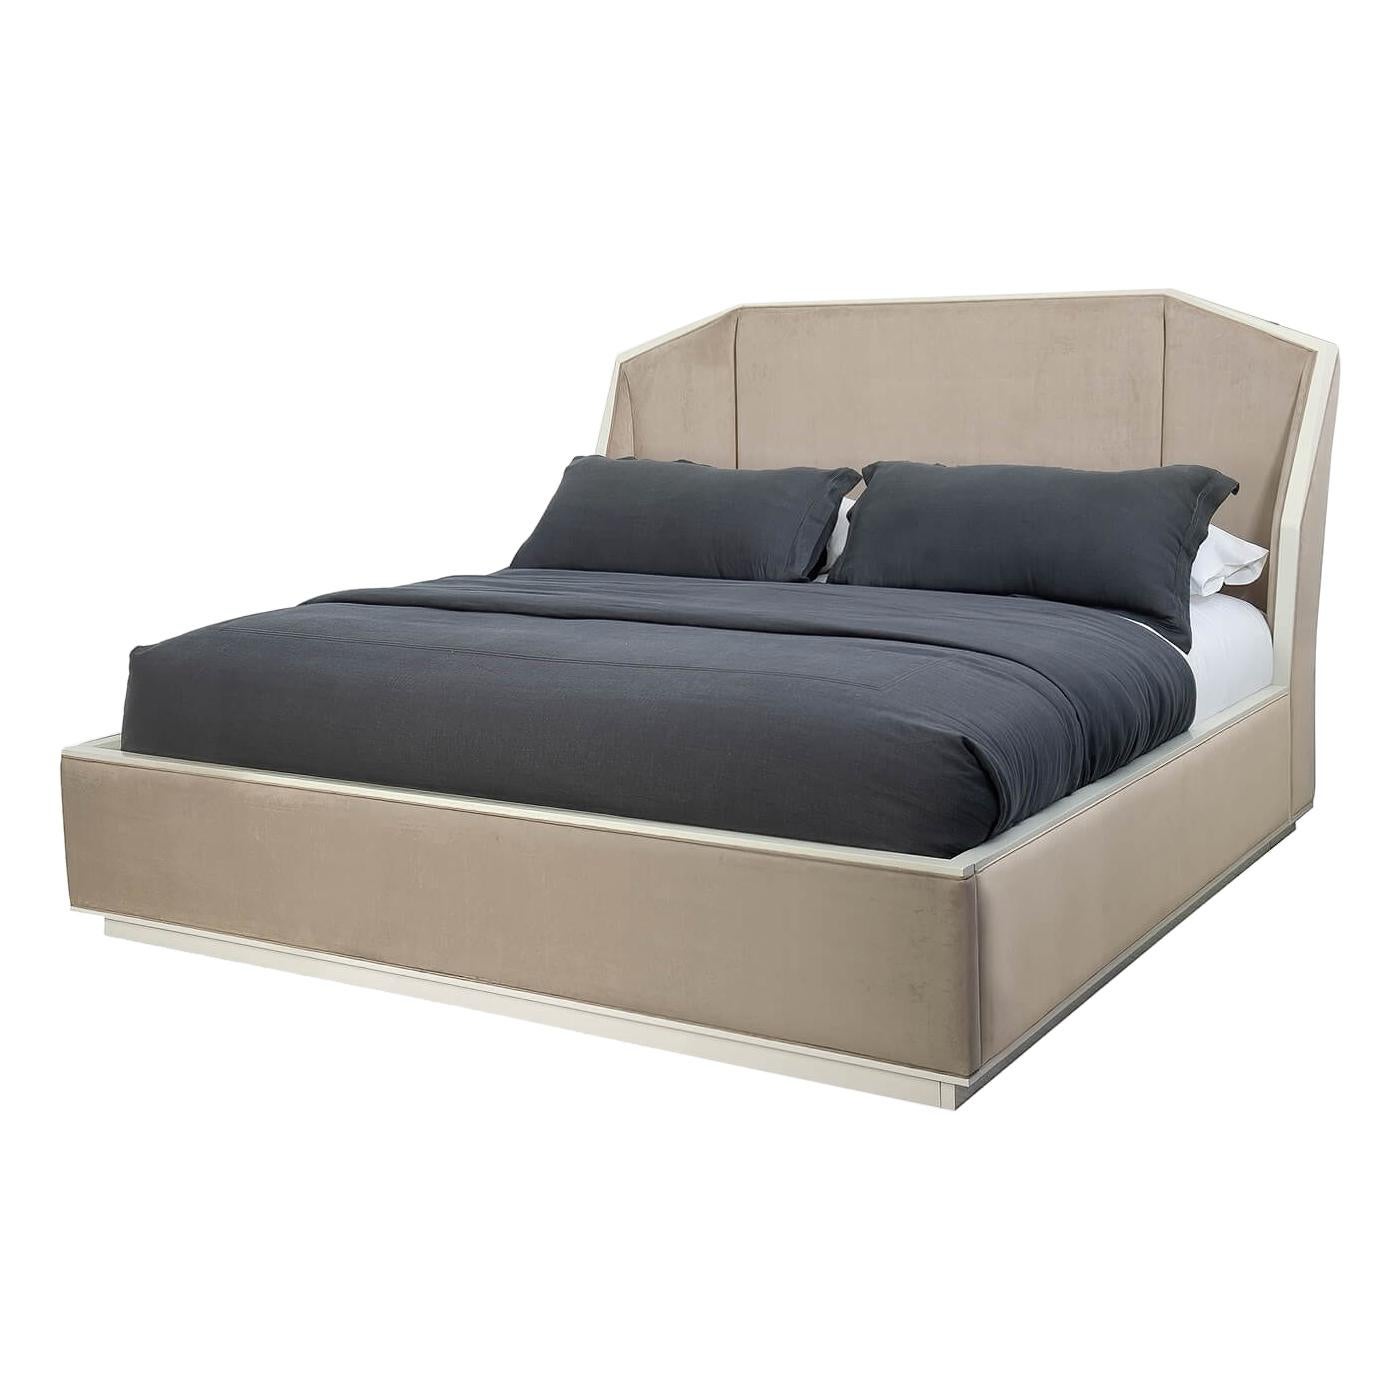 Art Deco Inspired Upholstered King Bed